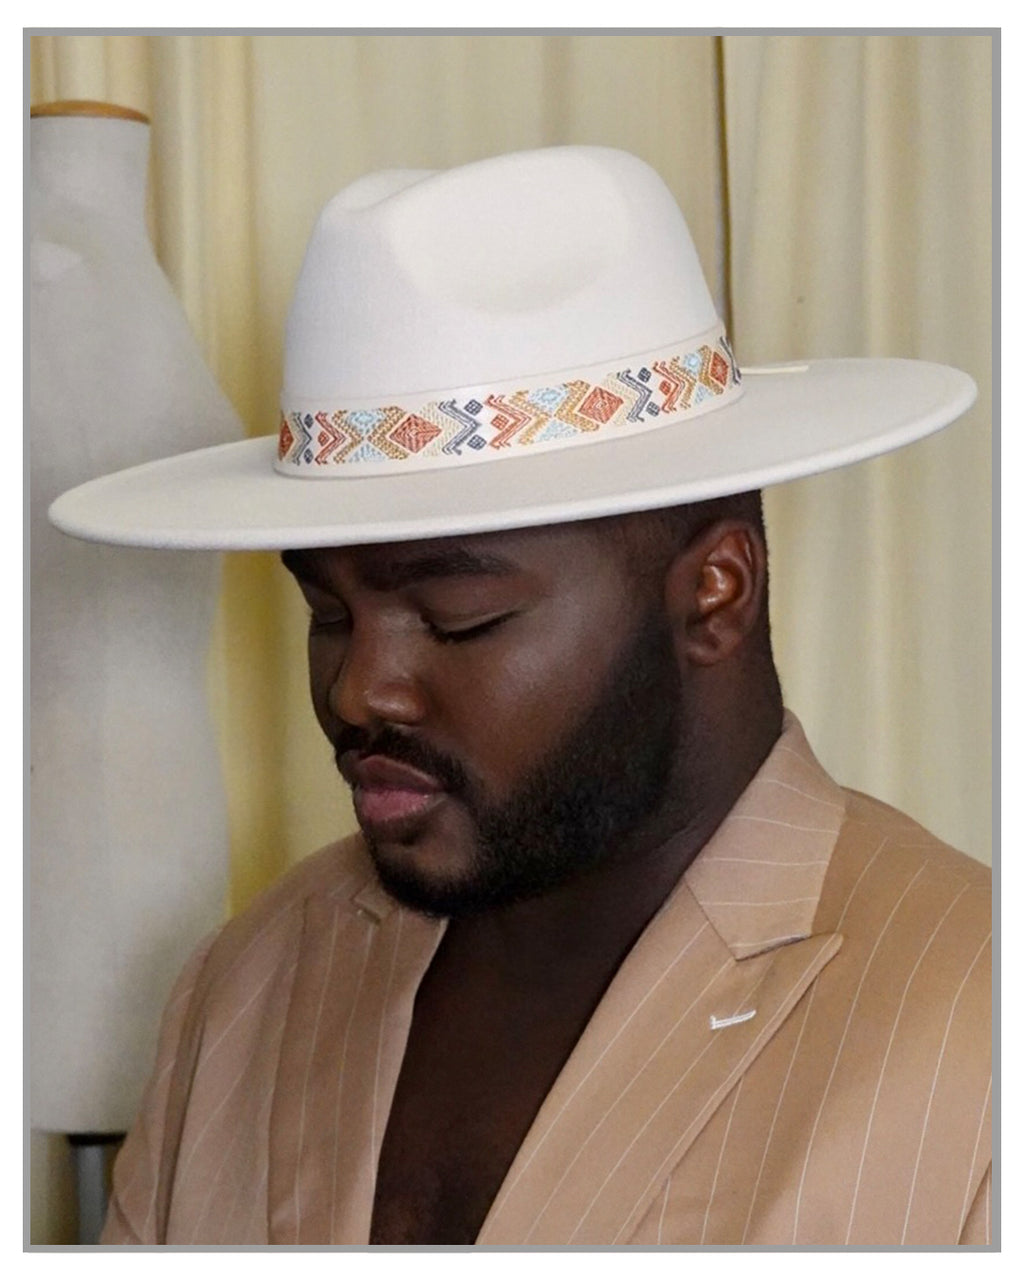 Colorful Boho Band White Fedora Hat